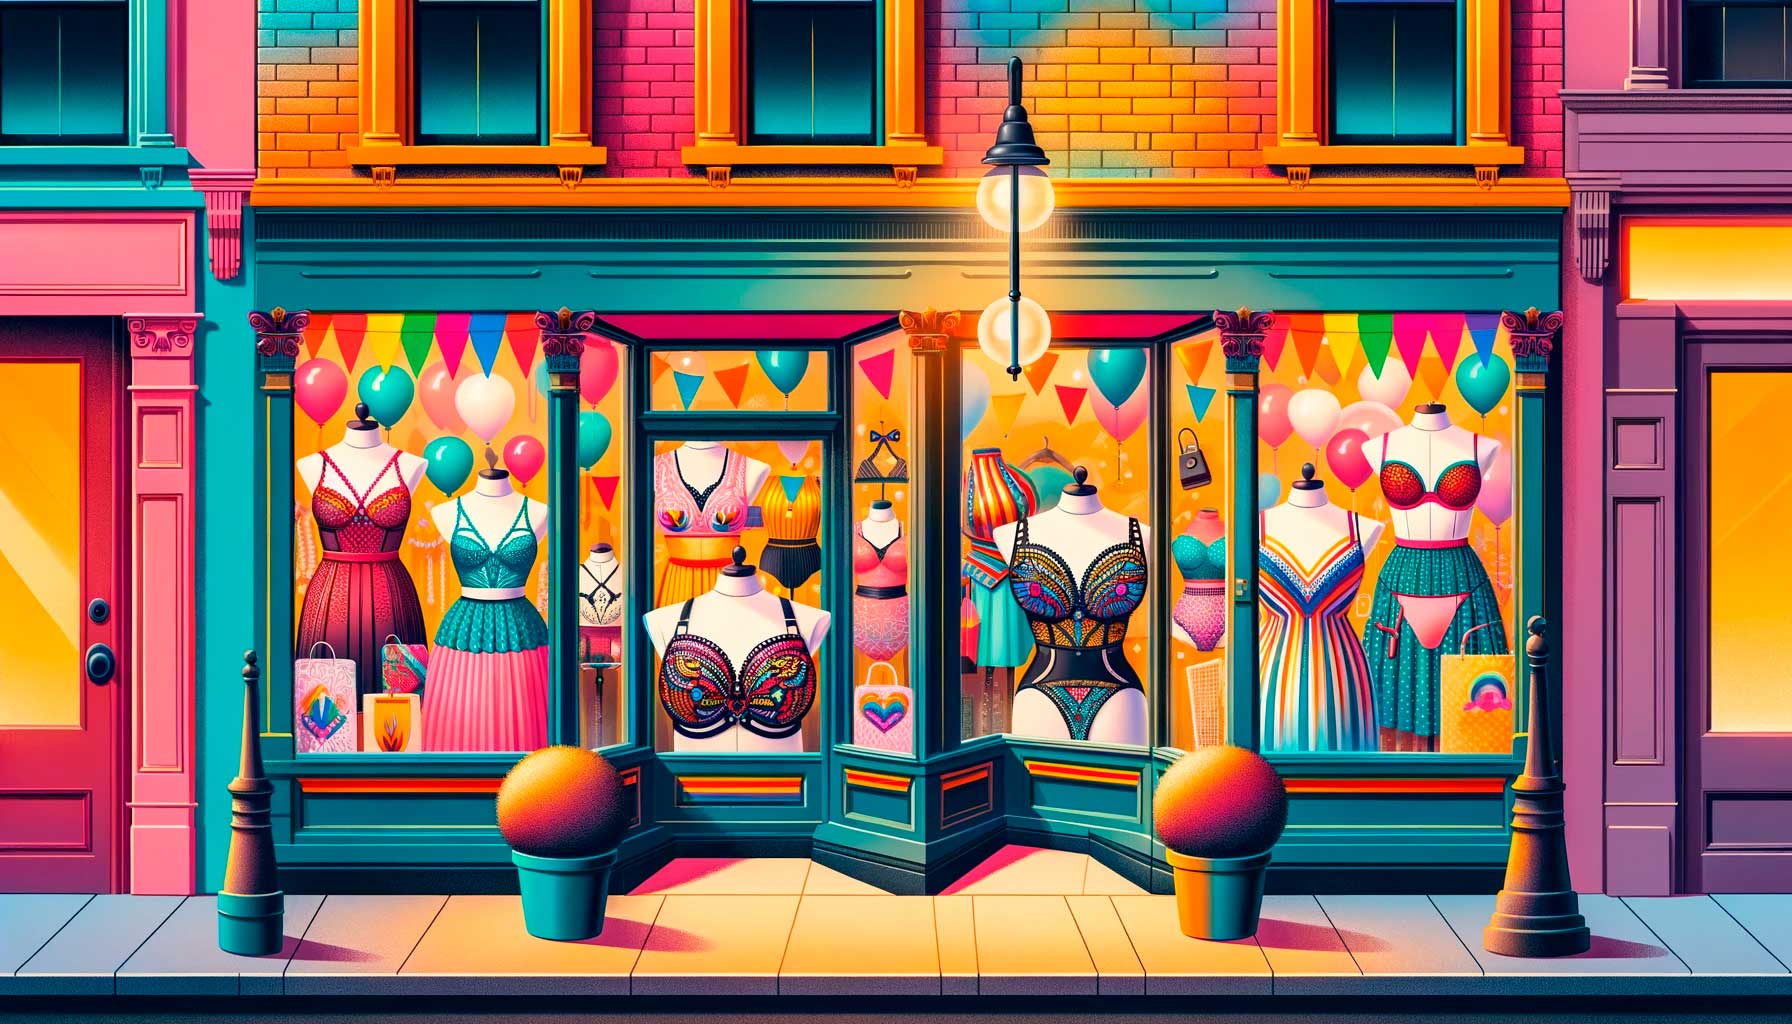 Fachada vibrante y colorida de una tienda especializada en accesorios para drag queen, destacando formas de seno de silicona con sujetadores en una variedad de estilos y tamaños.